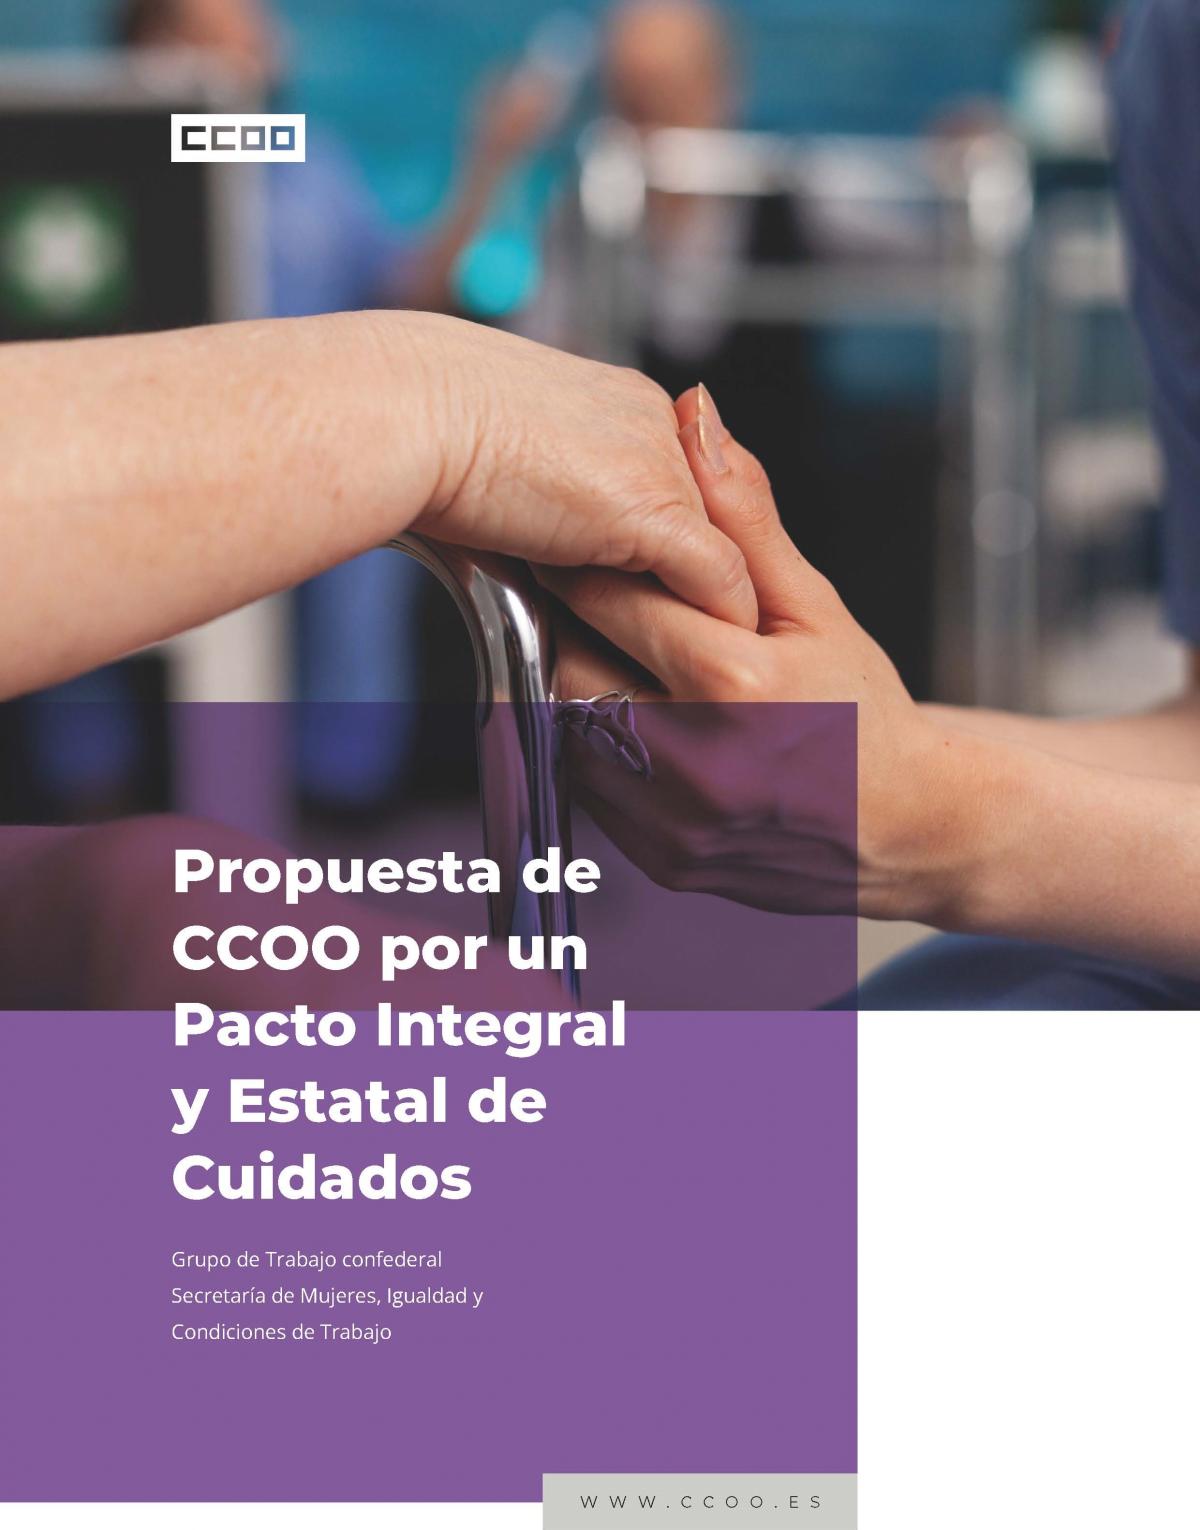 Propuesta de CCOO por un Pacto Integral y Estatal de Cuidados.